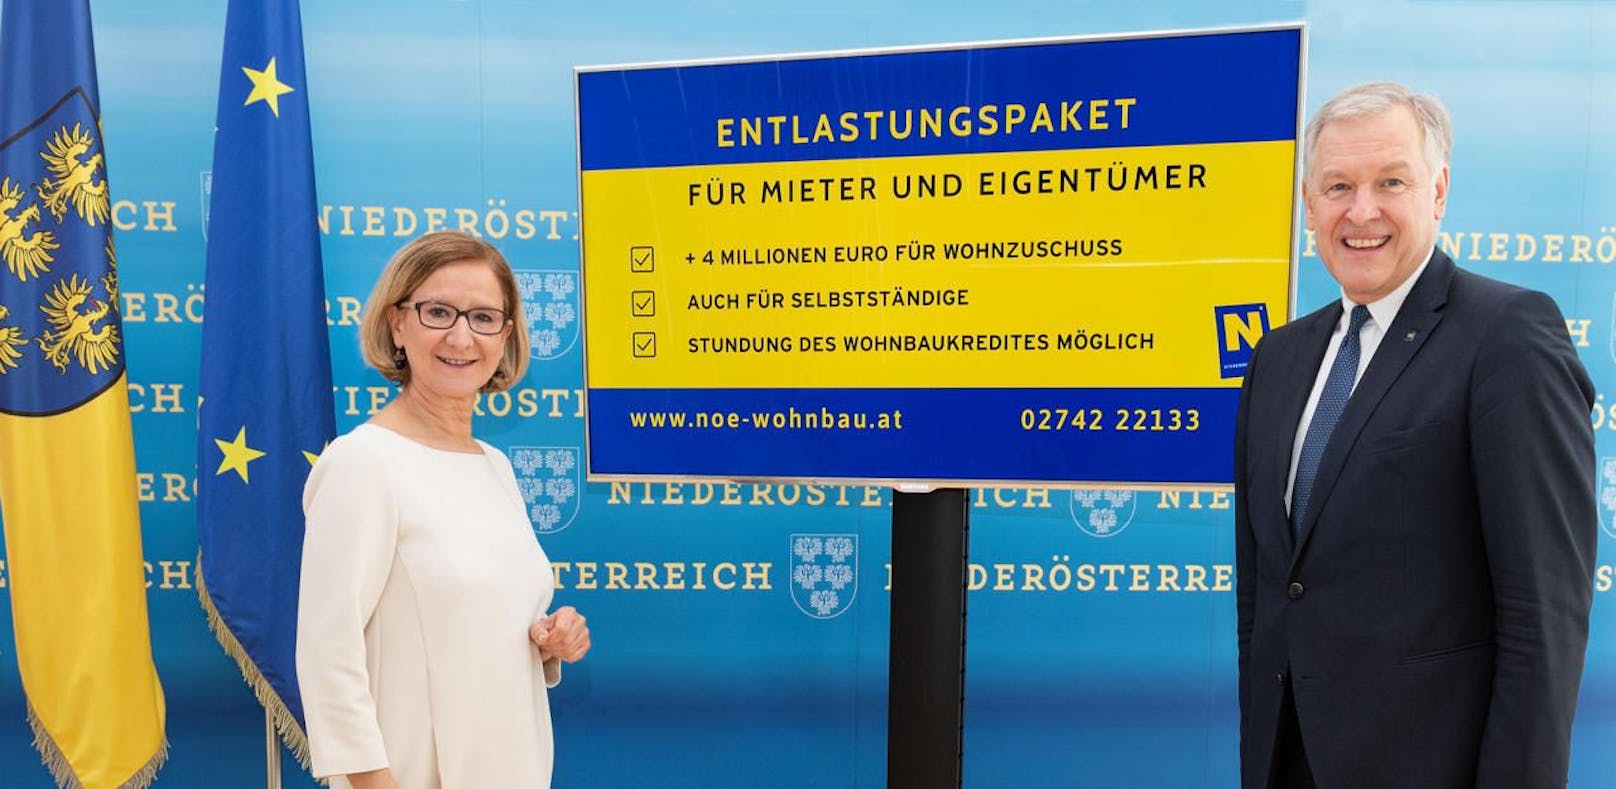 Landeshauptfrau Johanna Mikl-Leitner (ÖVP) und Landesrat Martin Eichtinger (ÖVP) präsentieren neues Paket zum Wohnbau.